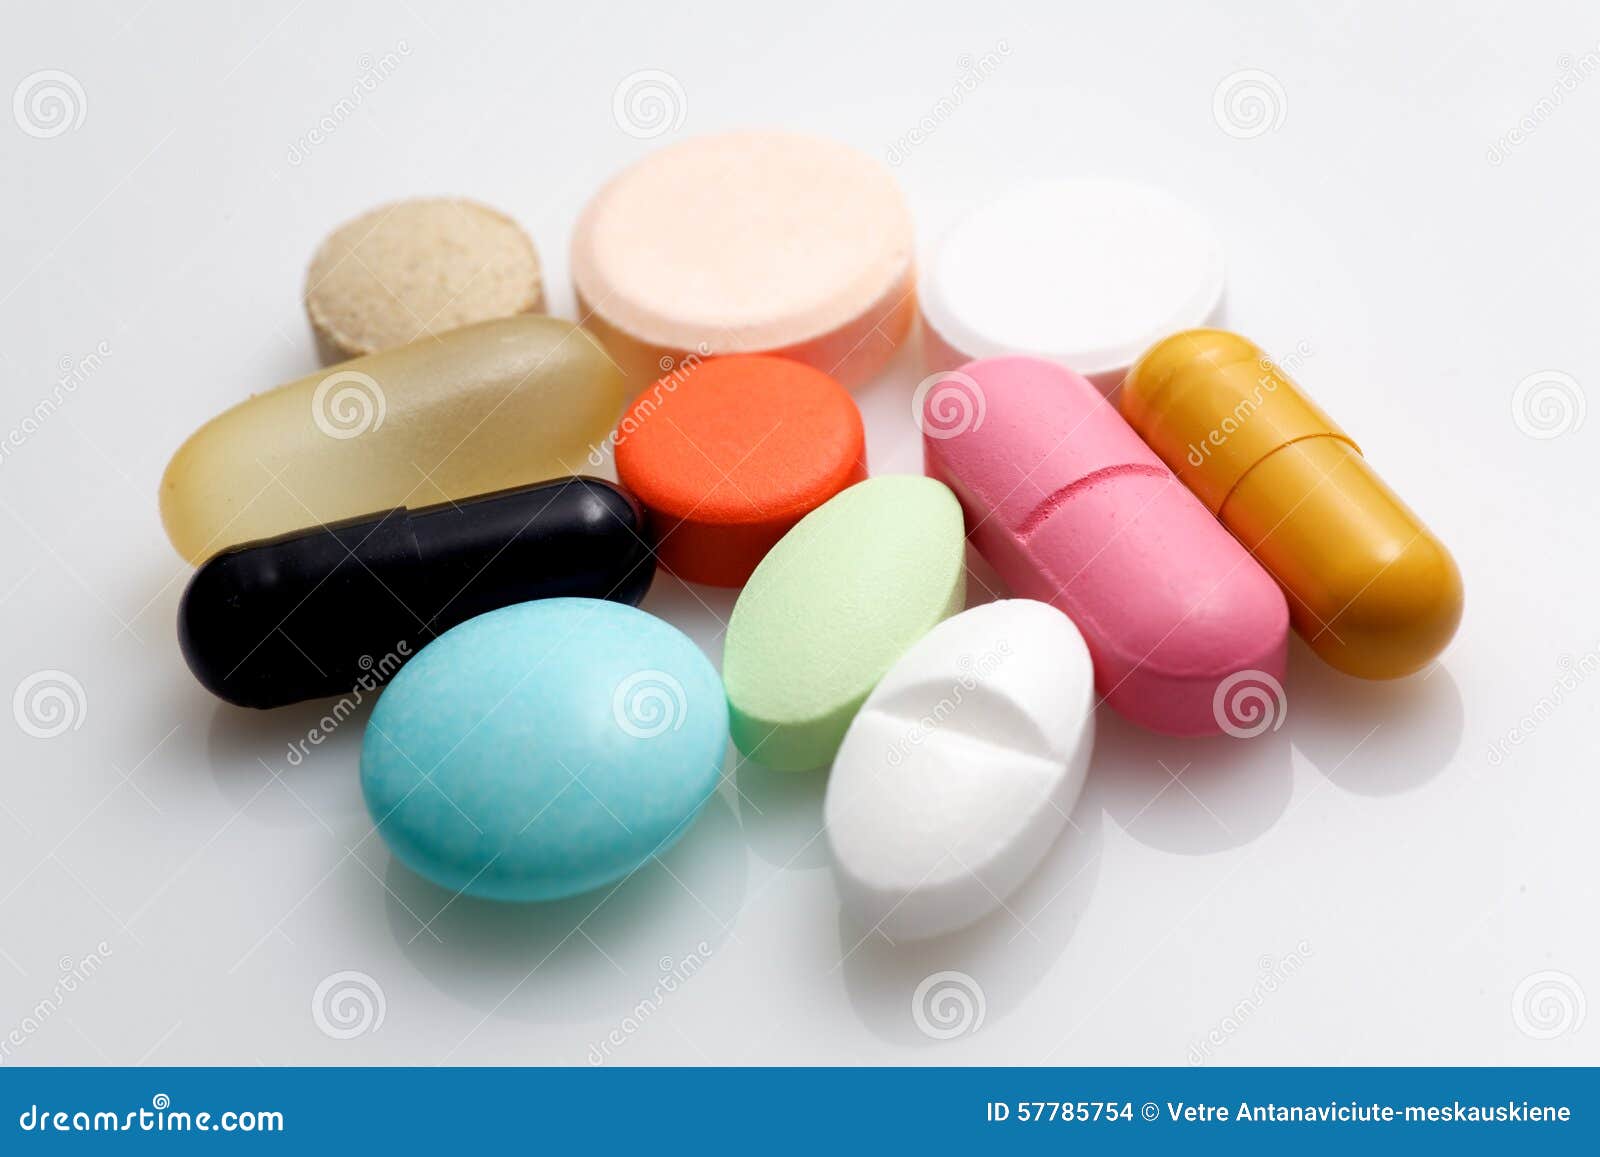 various pharmaceuticals.